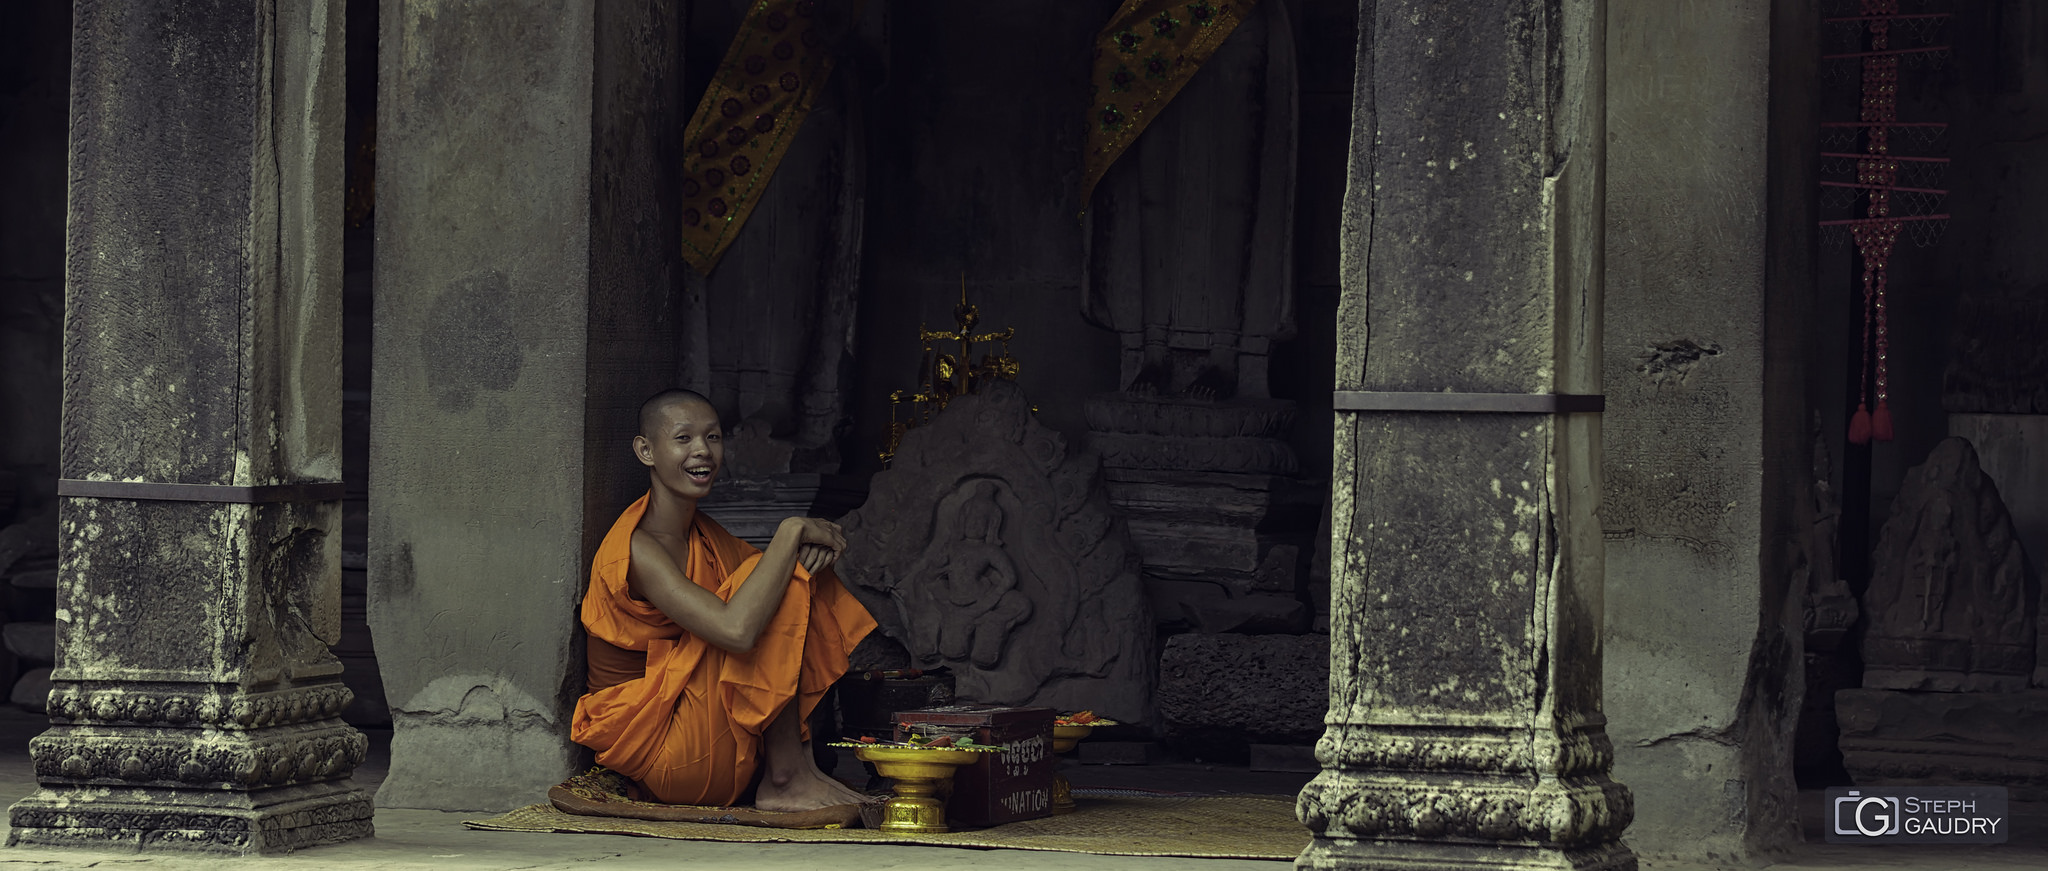 Le sourire du jeune bouddhiste [Click to start slideshow]